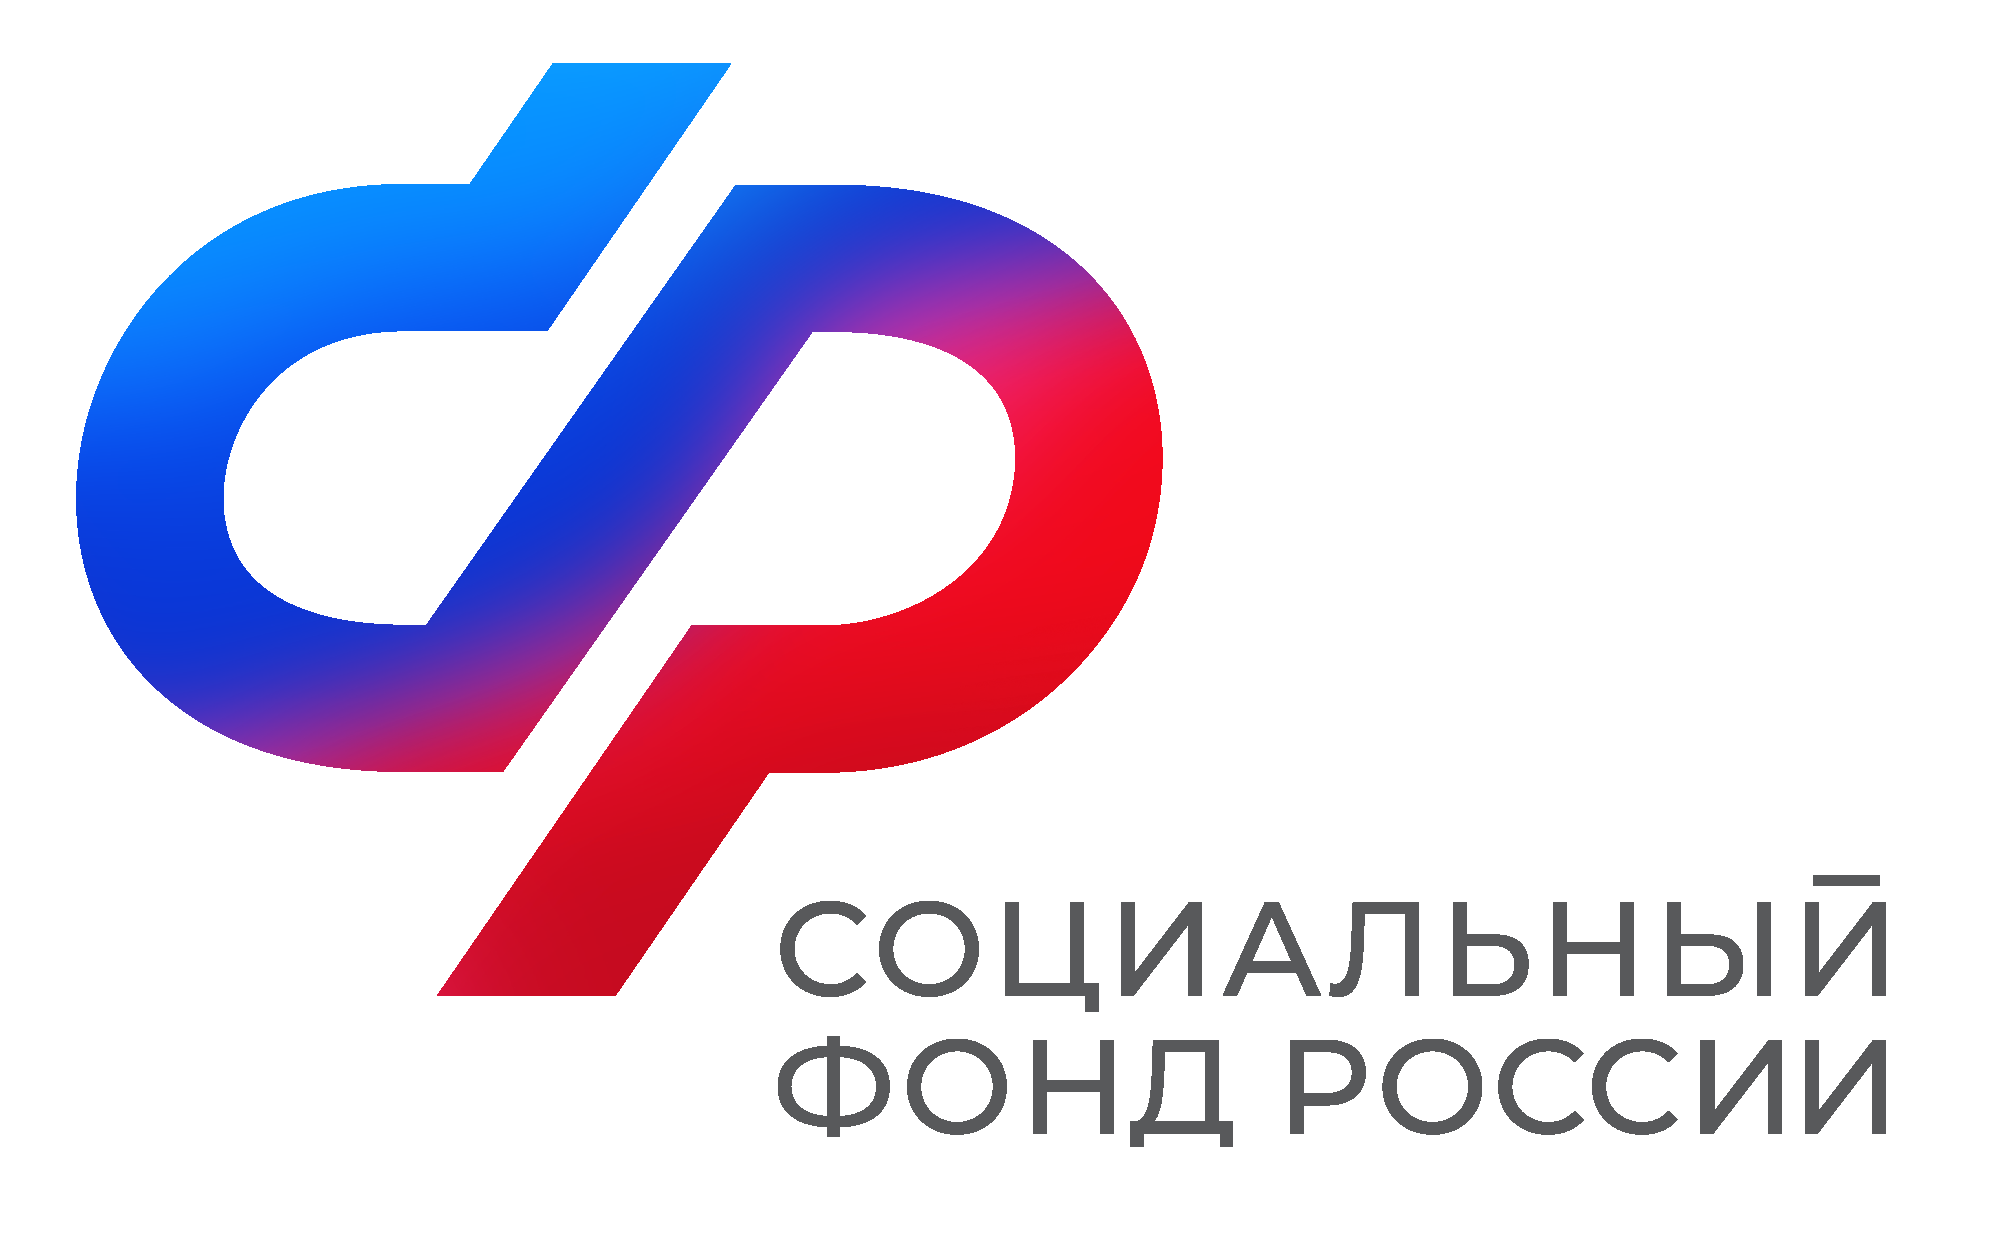 Отделение Социального фонда России в Приморье обеспечило более 2 тысяч льготников бесплатным проездом к месту лечения и обратно.